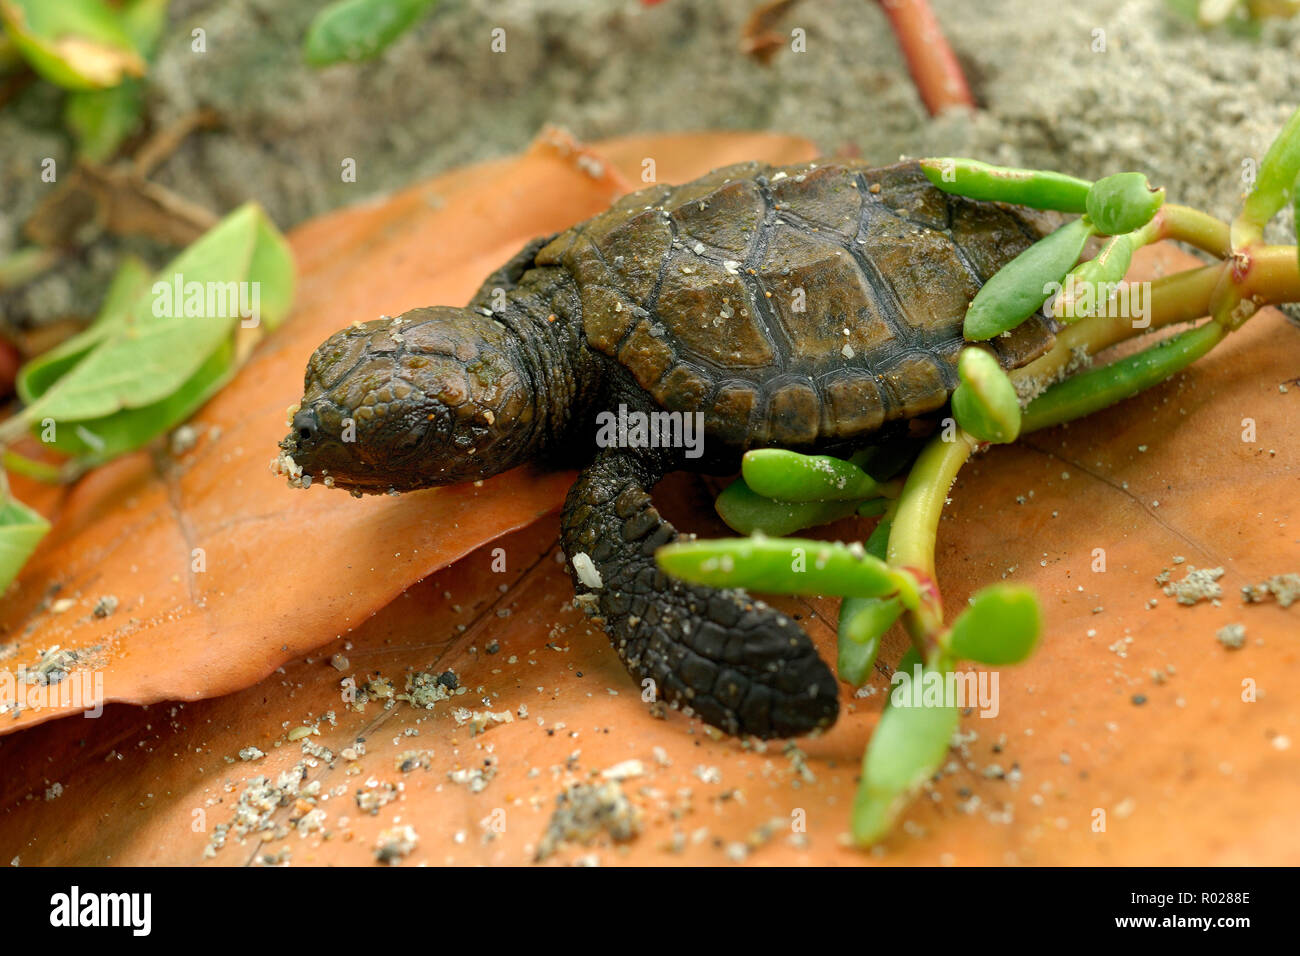 Hawskbill sea turtle, Eretmochelys imbricata, hatchling, Florida B1275 Stock Photo